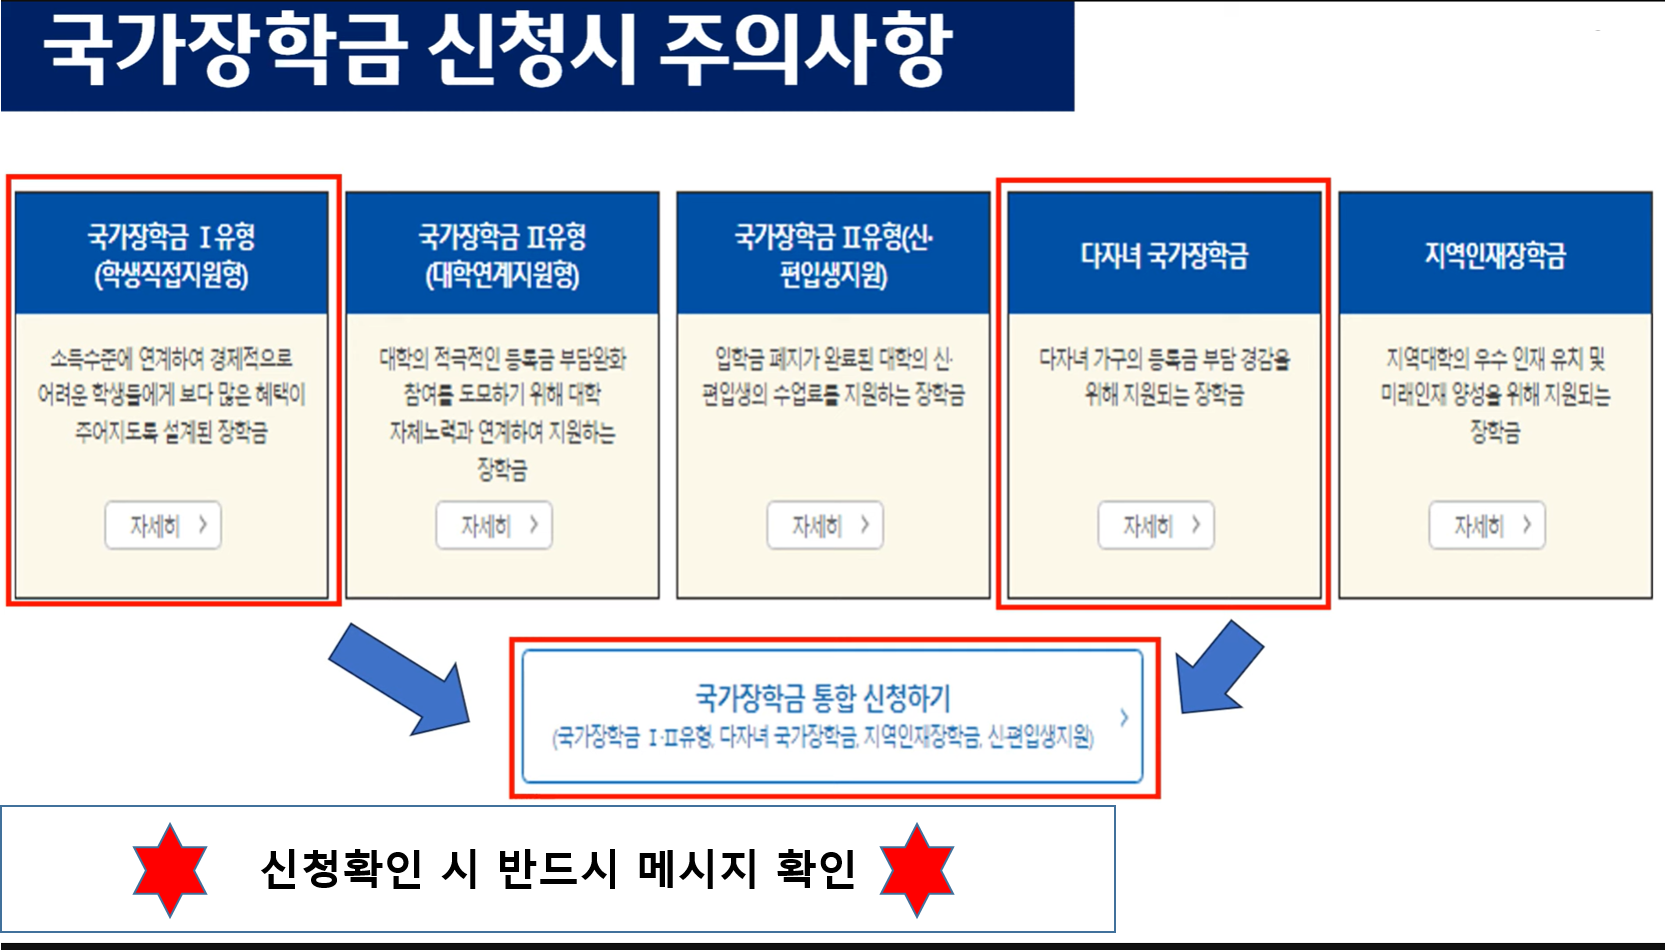 한국장학재단홈페이지